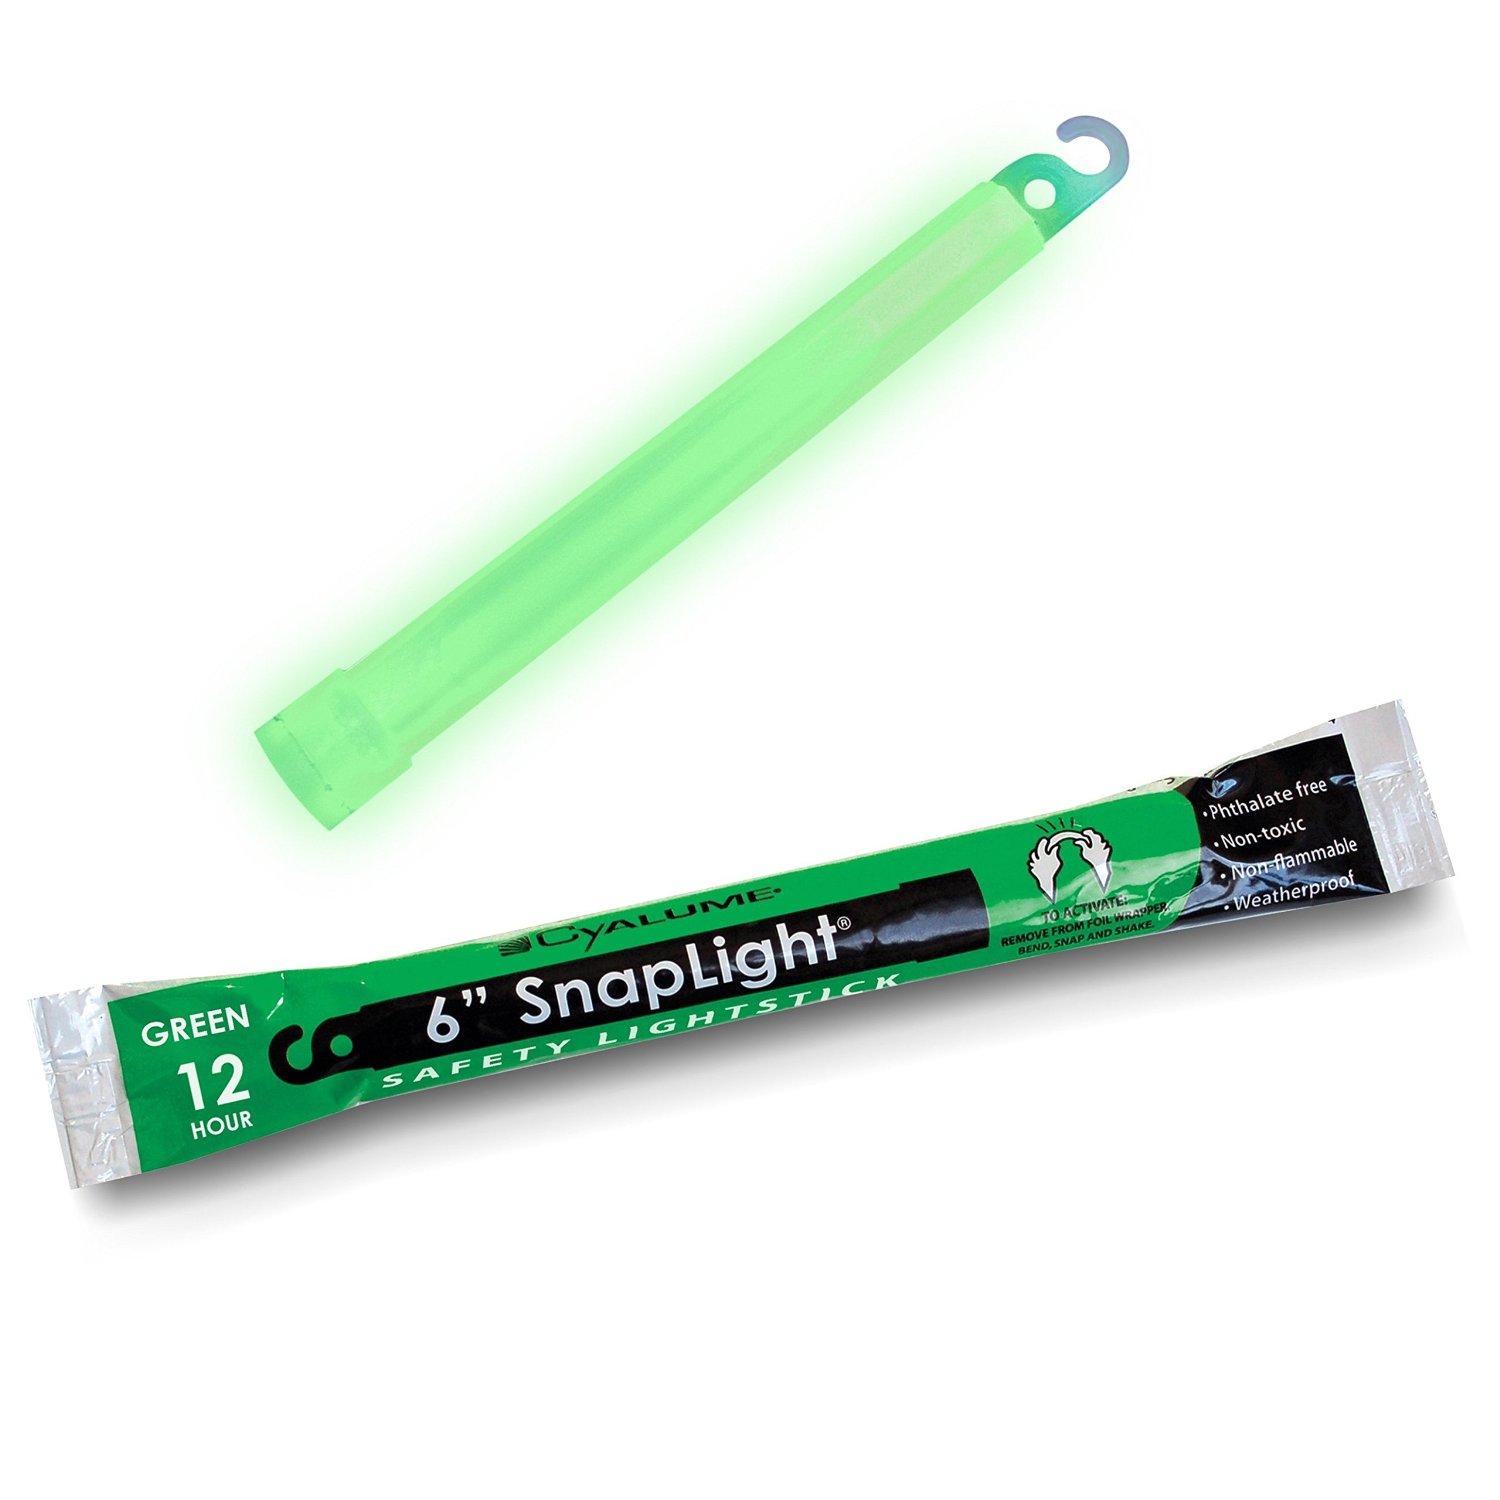 6" Snaplight Green 12hr